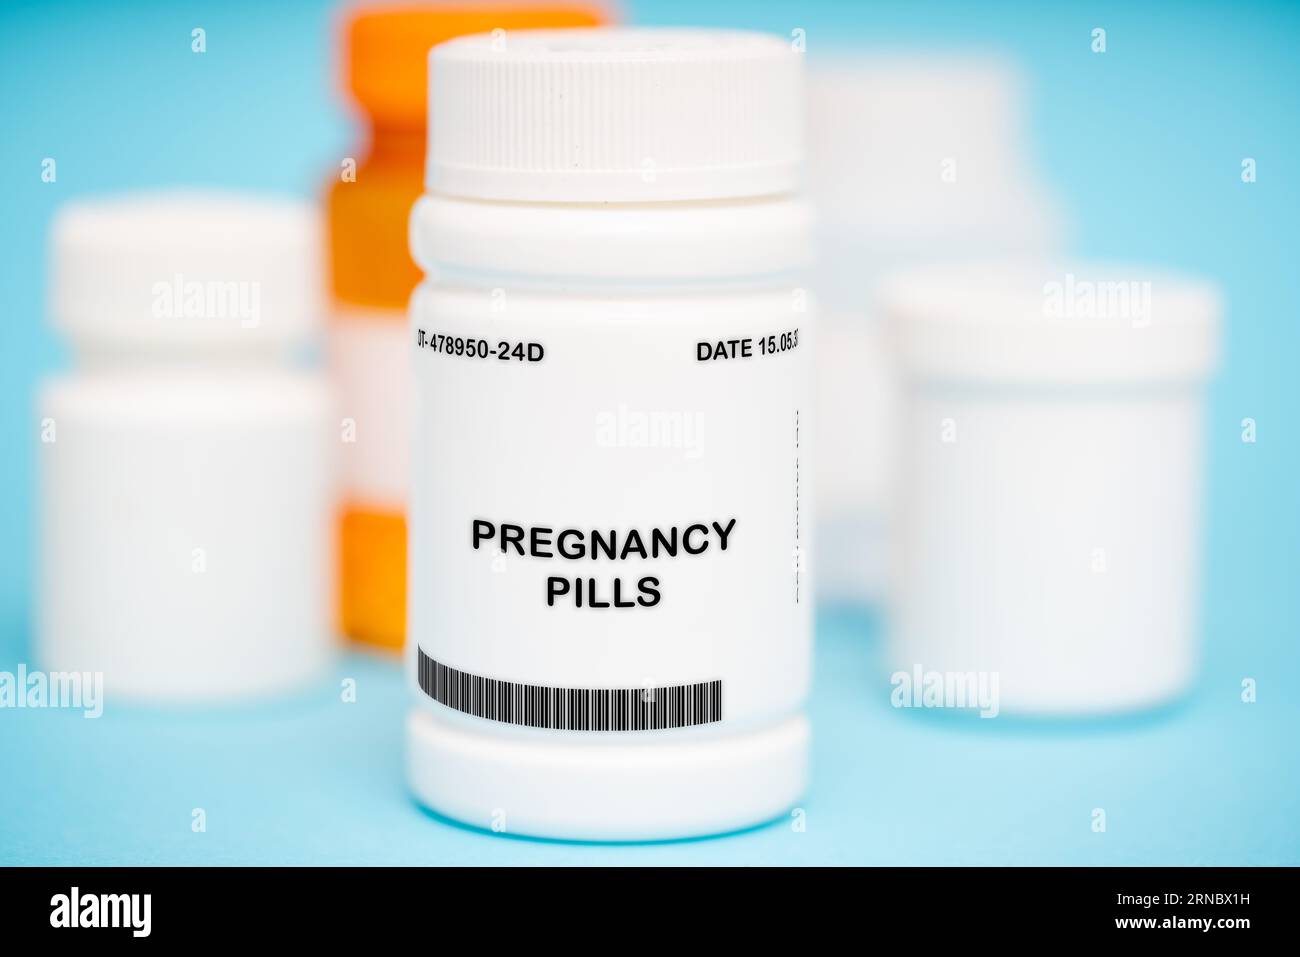 La pilule contraceptive orale combinée (COCP), souvent appelée pilule contraceptive ou familièrement « la pilule », Banque D'Images